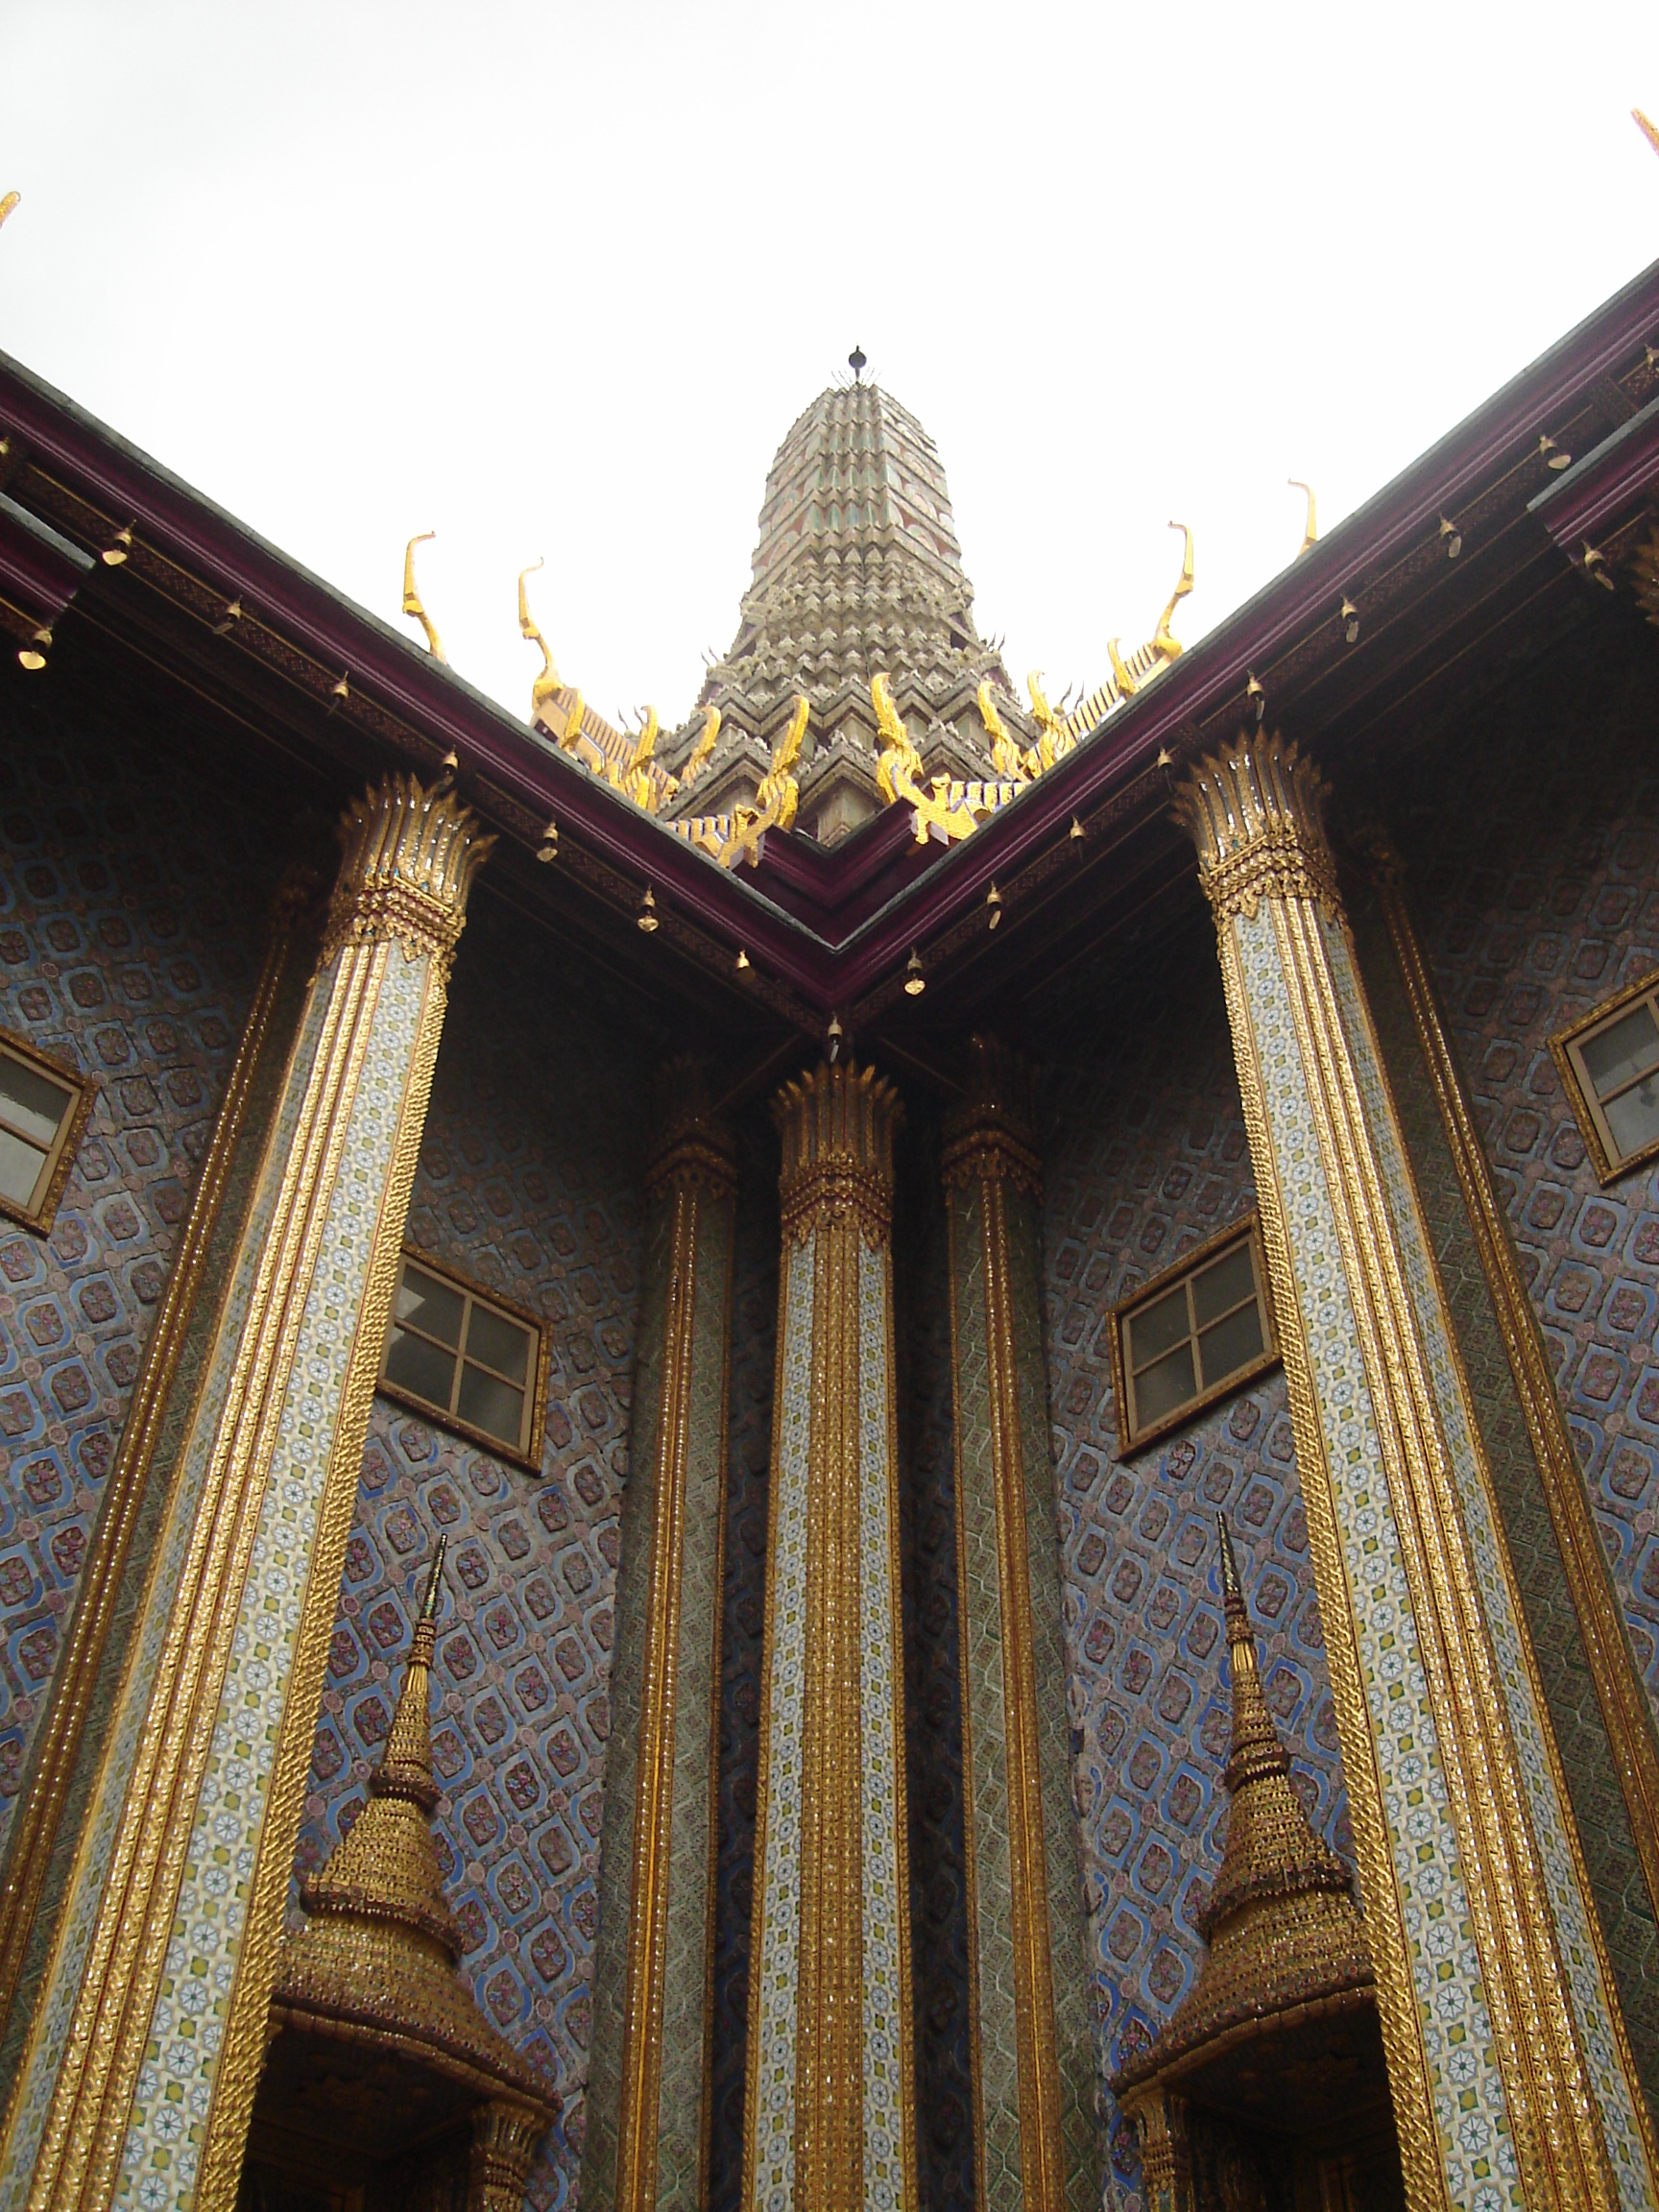 Grand palace - Bangkok